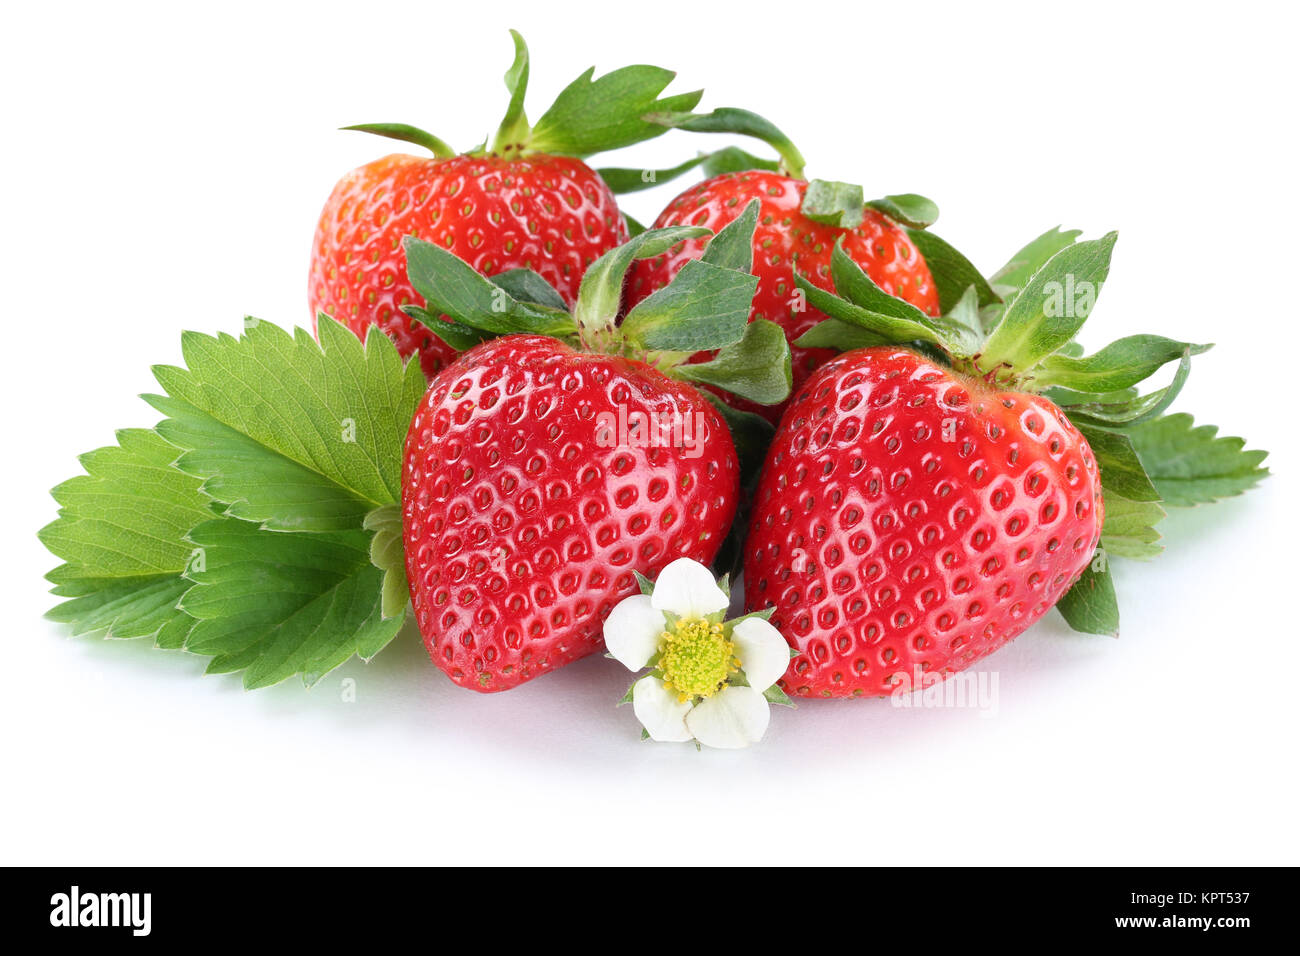 Erdbeere Erdbeeren Beeren Beere Frucht mit Blüten Freisteller freigestellt isoliert vor einem weissen Hintergrund Stock Photo